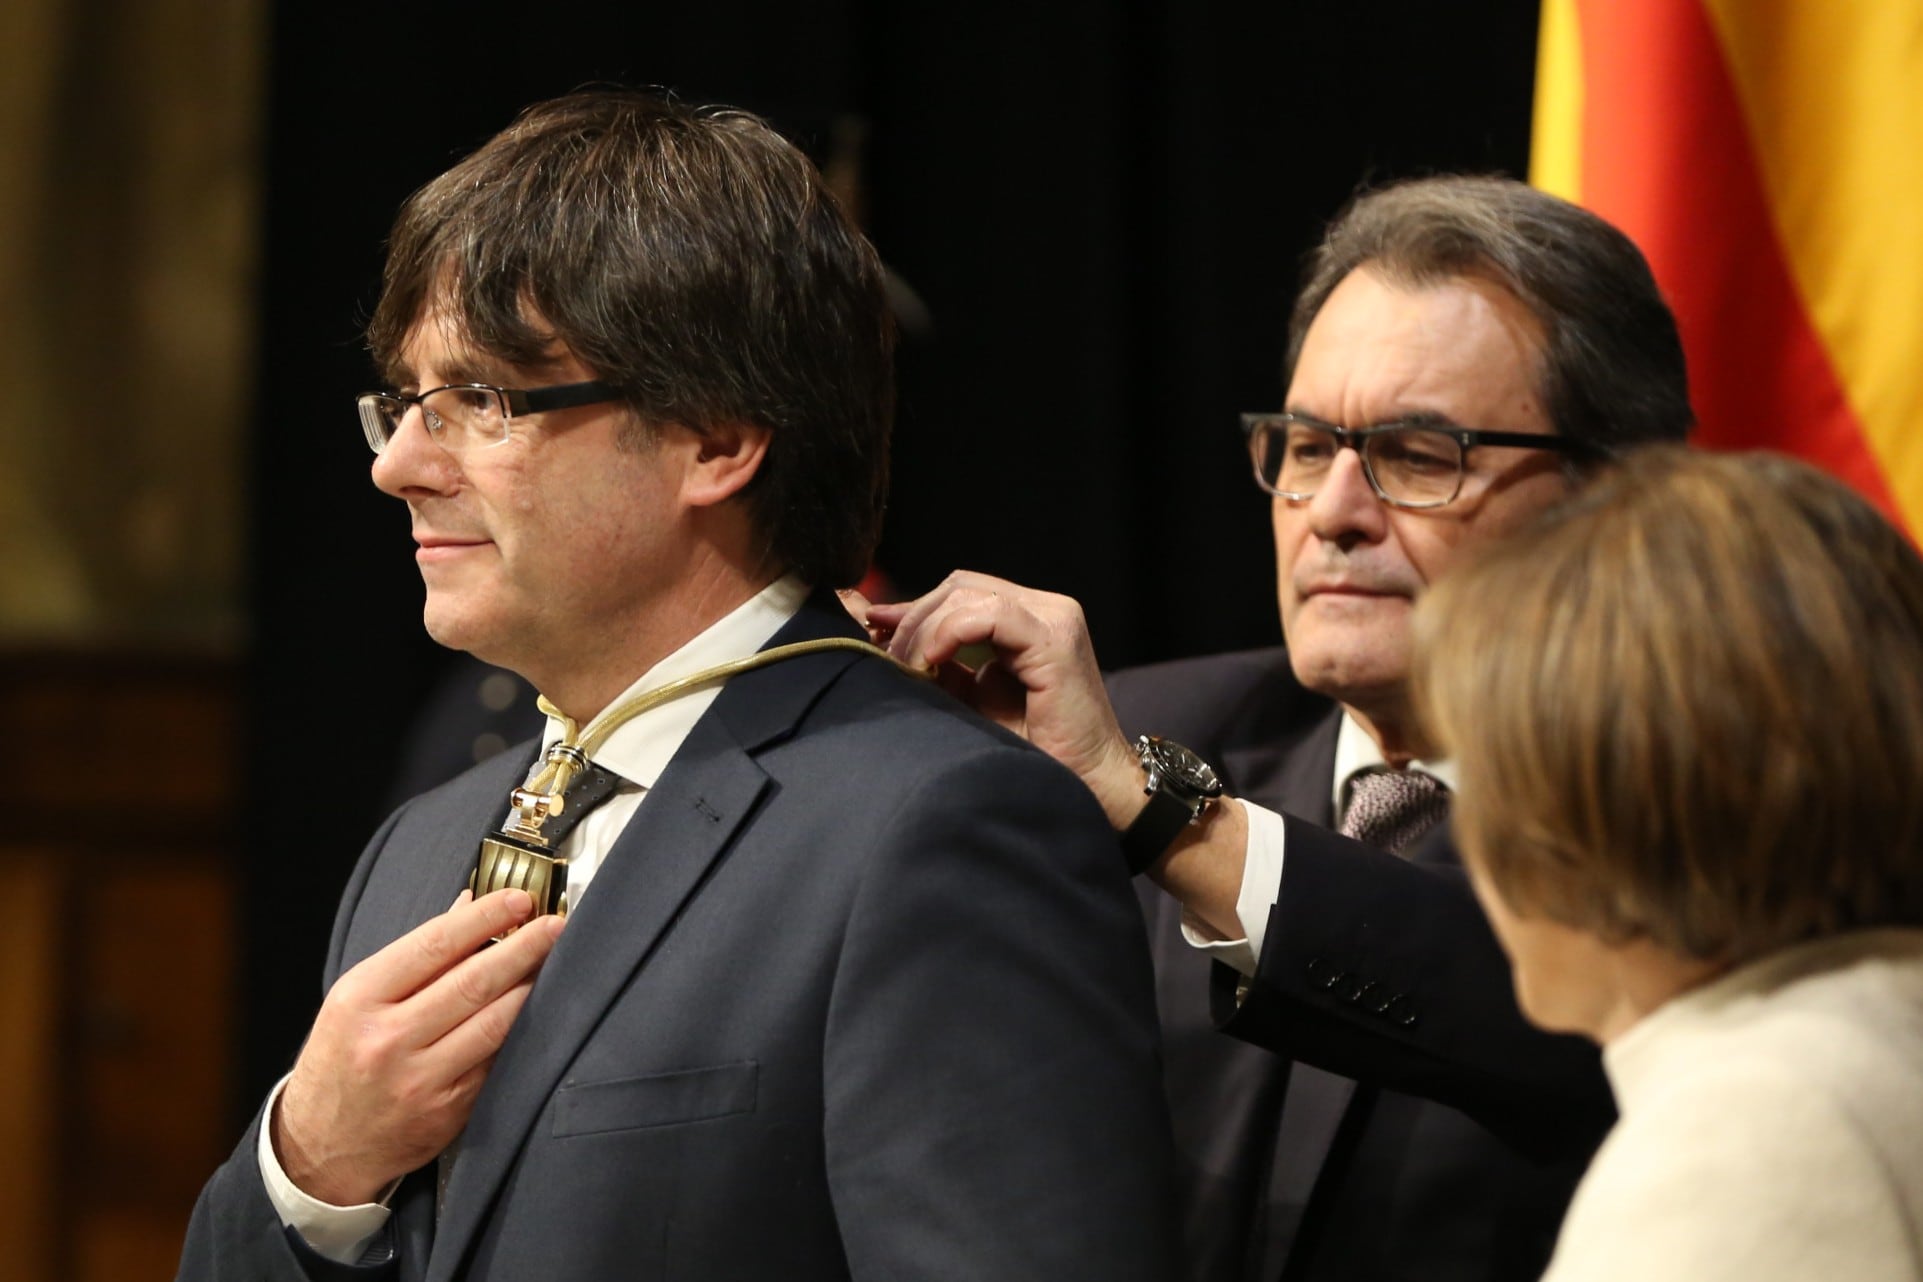 El expresidente de la Generalitat Artur Mas impone la medalla representativa del cargo al entonces nuevo presidente catalán, Carles Puigdemont.